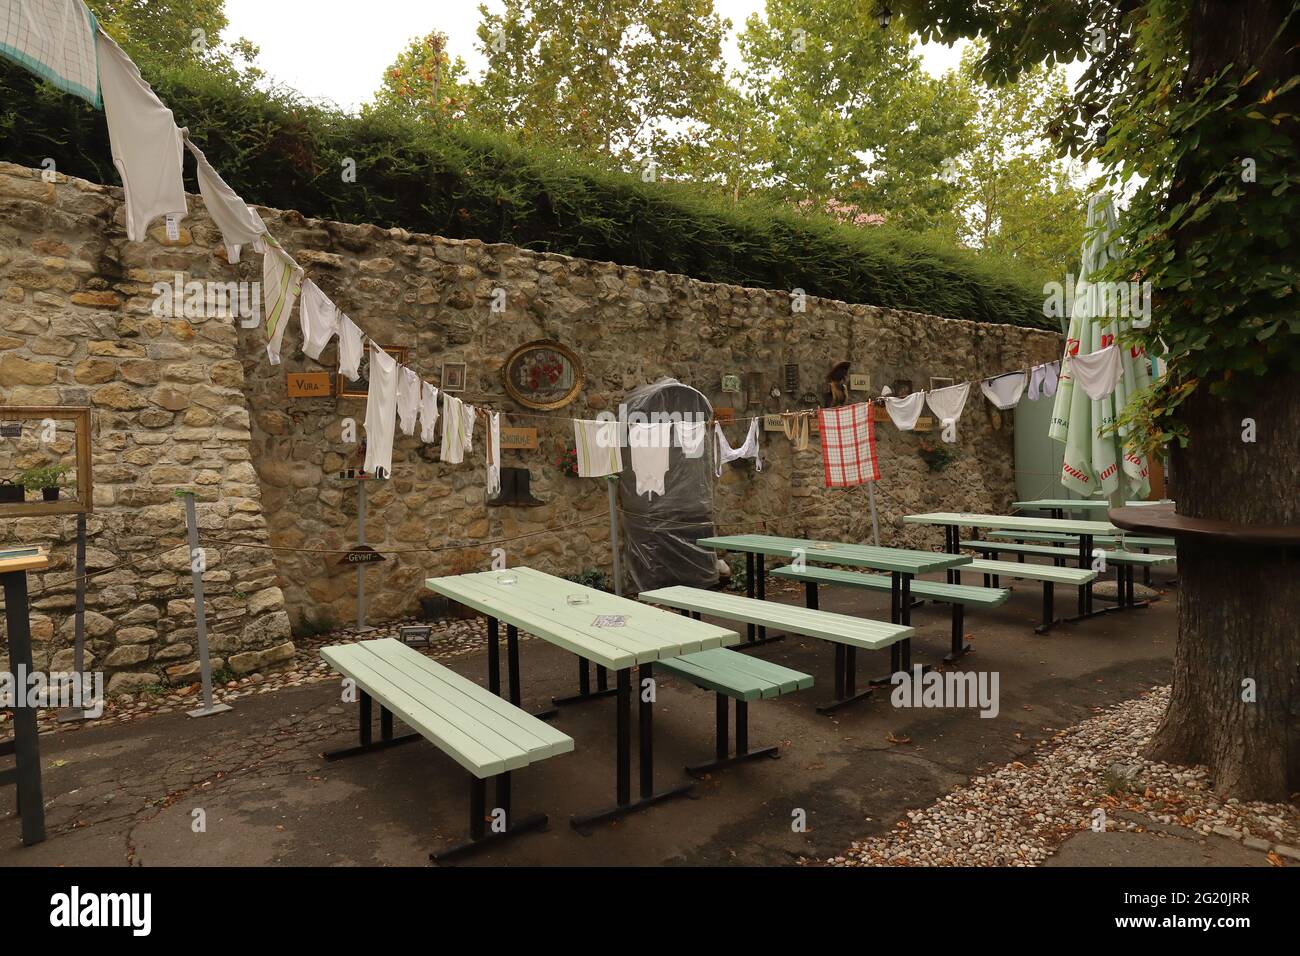 KROATIEN, ZAGREB, GRADEC - 28. JULI 2019: Bänke und Tische sind mit Leinen geschmückt, die an einer Wäscheleine hängen Stockfoto